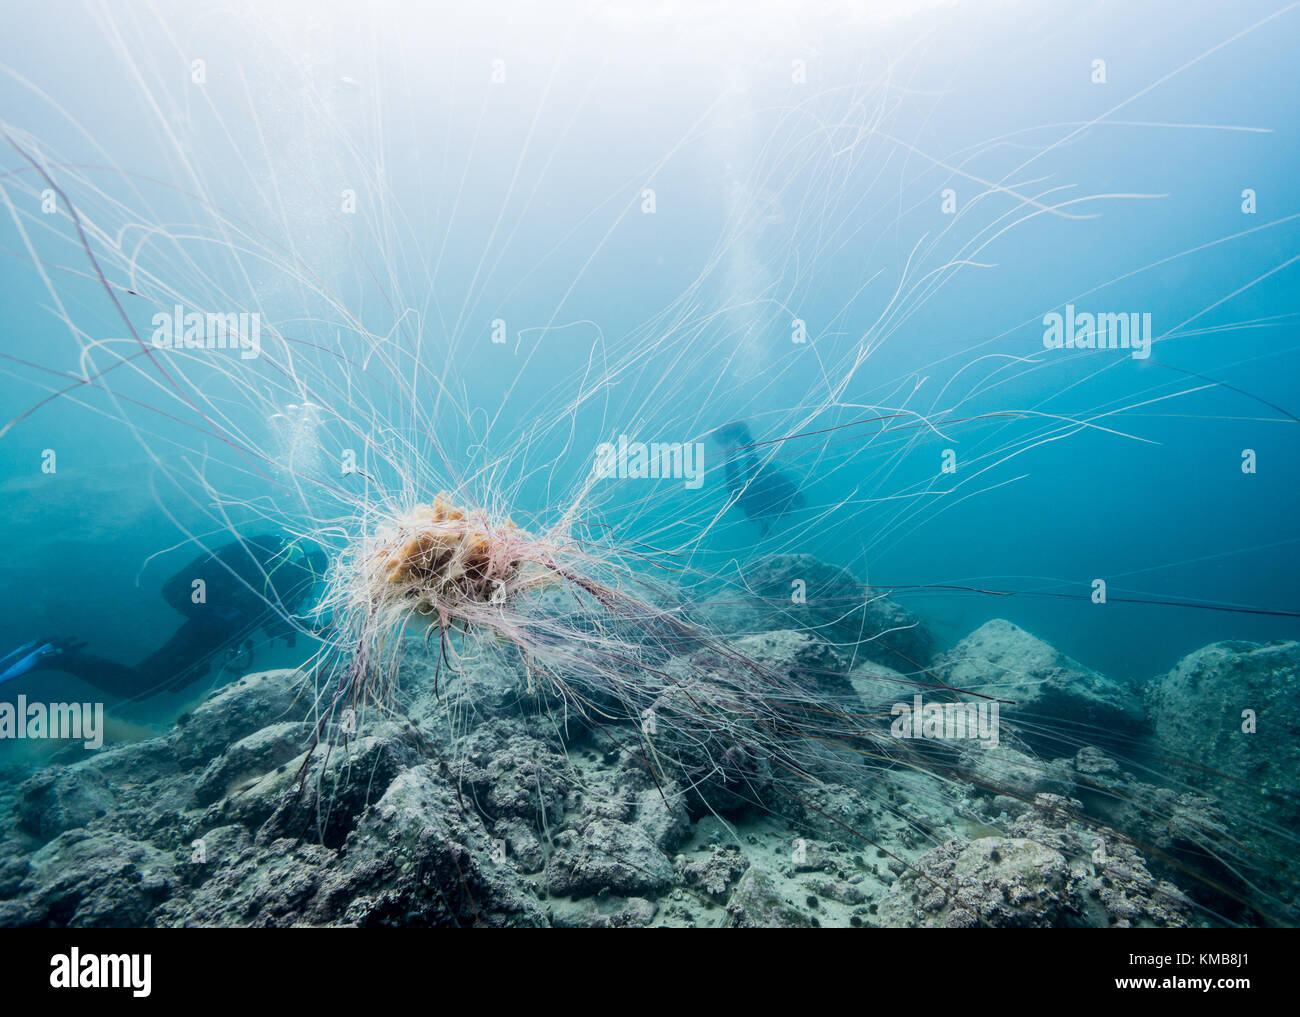 Leone la criniera meduse di fronte di silhouette di sommozzatori in Tromso, Norvegia Foto Stock